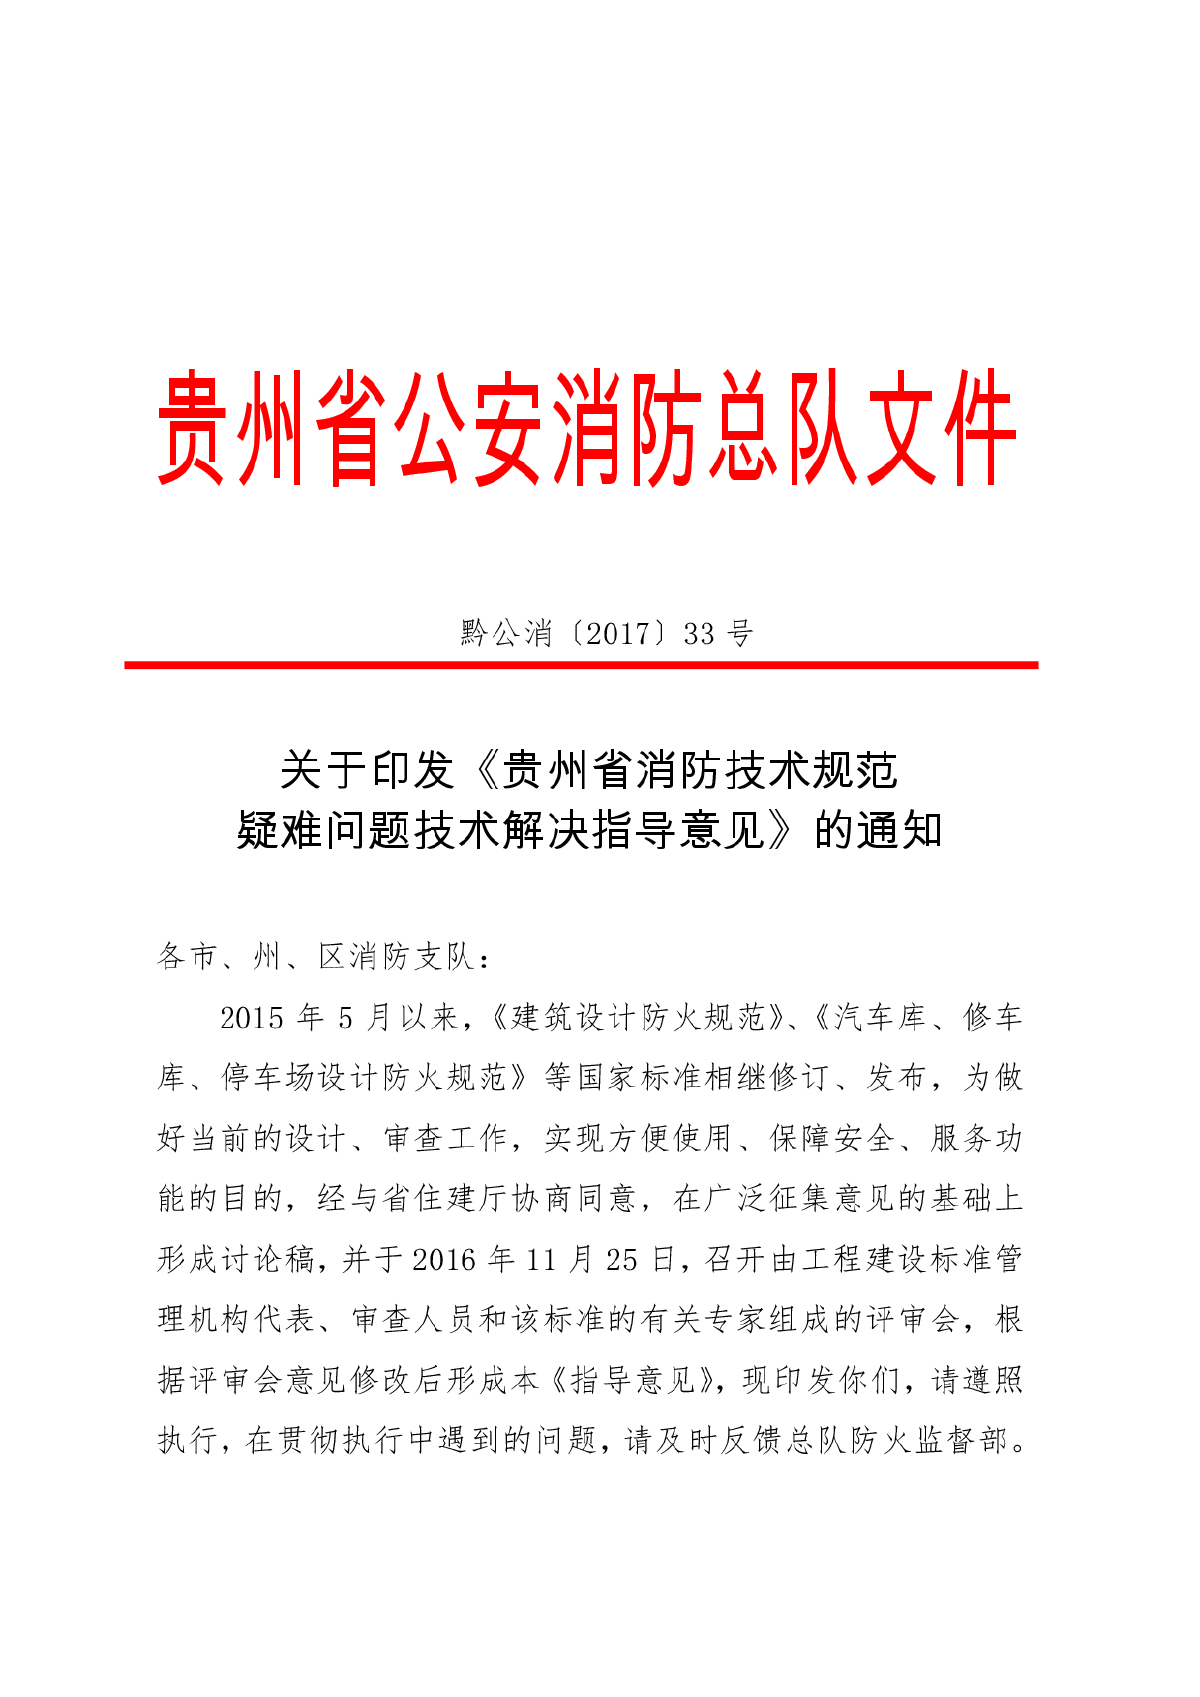 黔公消[2017]33号贵州省消防技术规范疑难问题技术解决指导意见